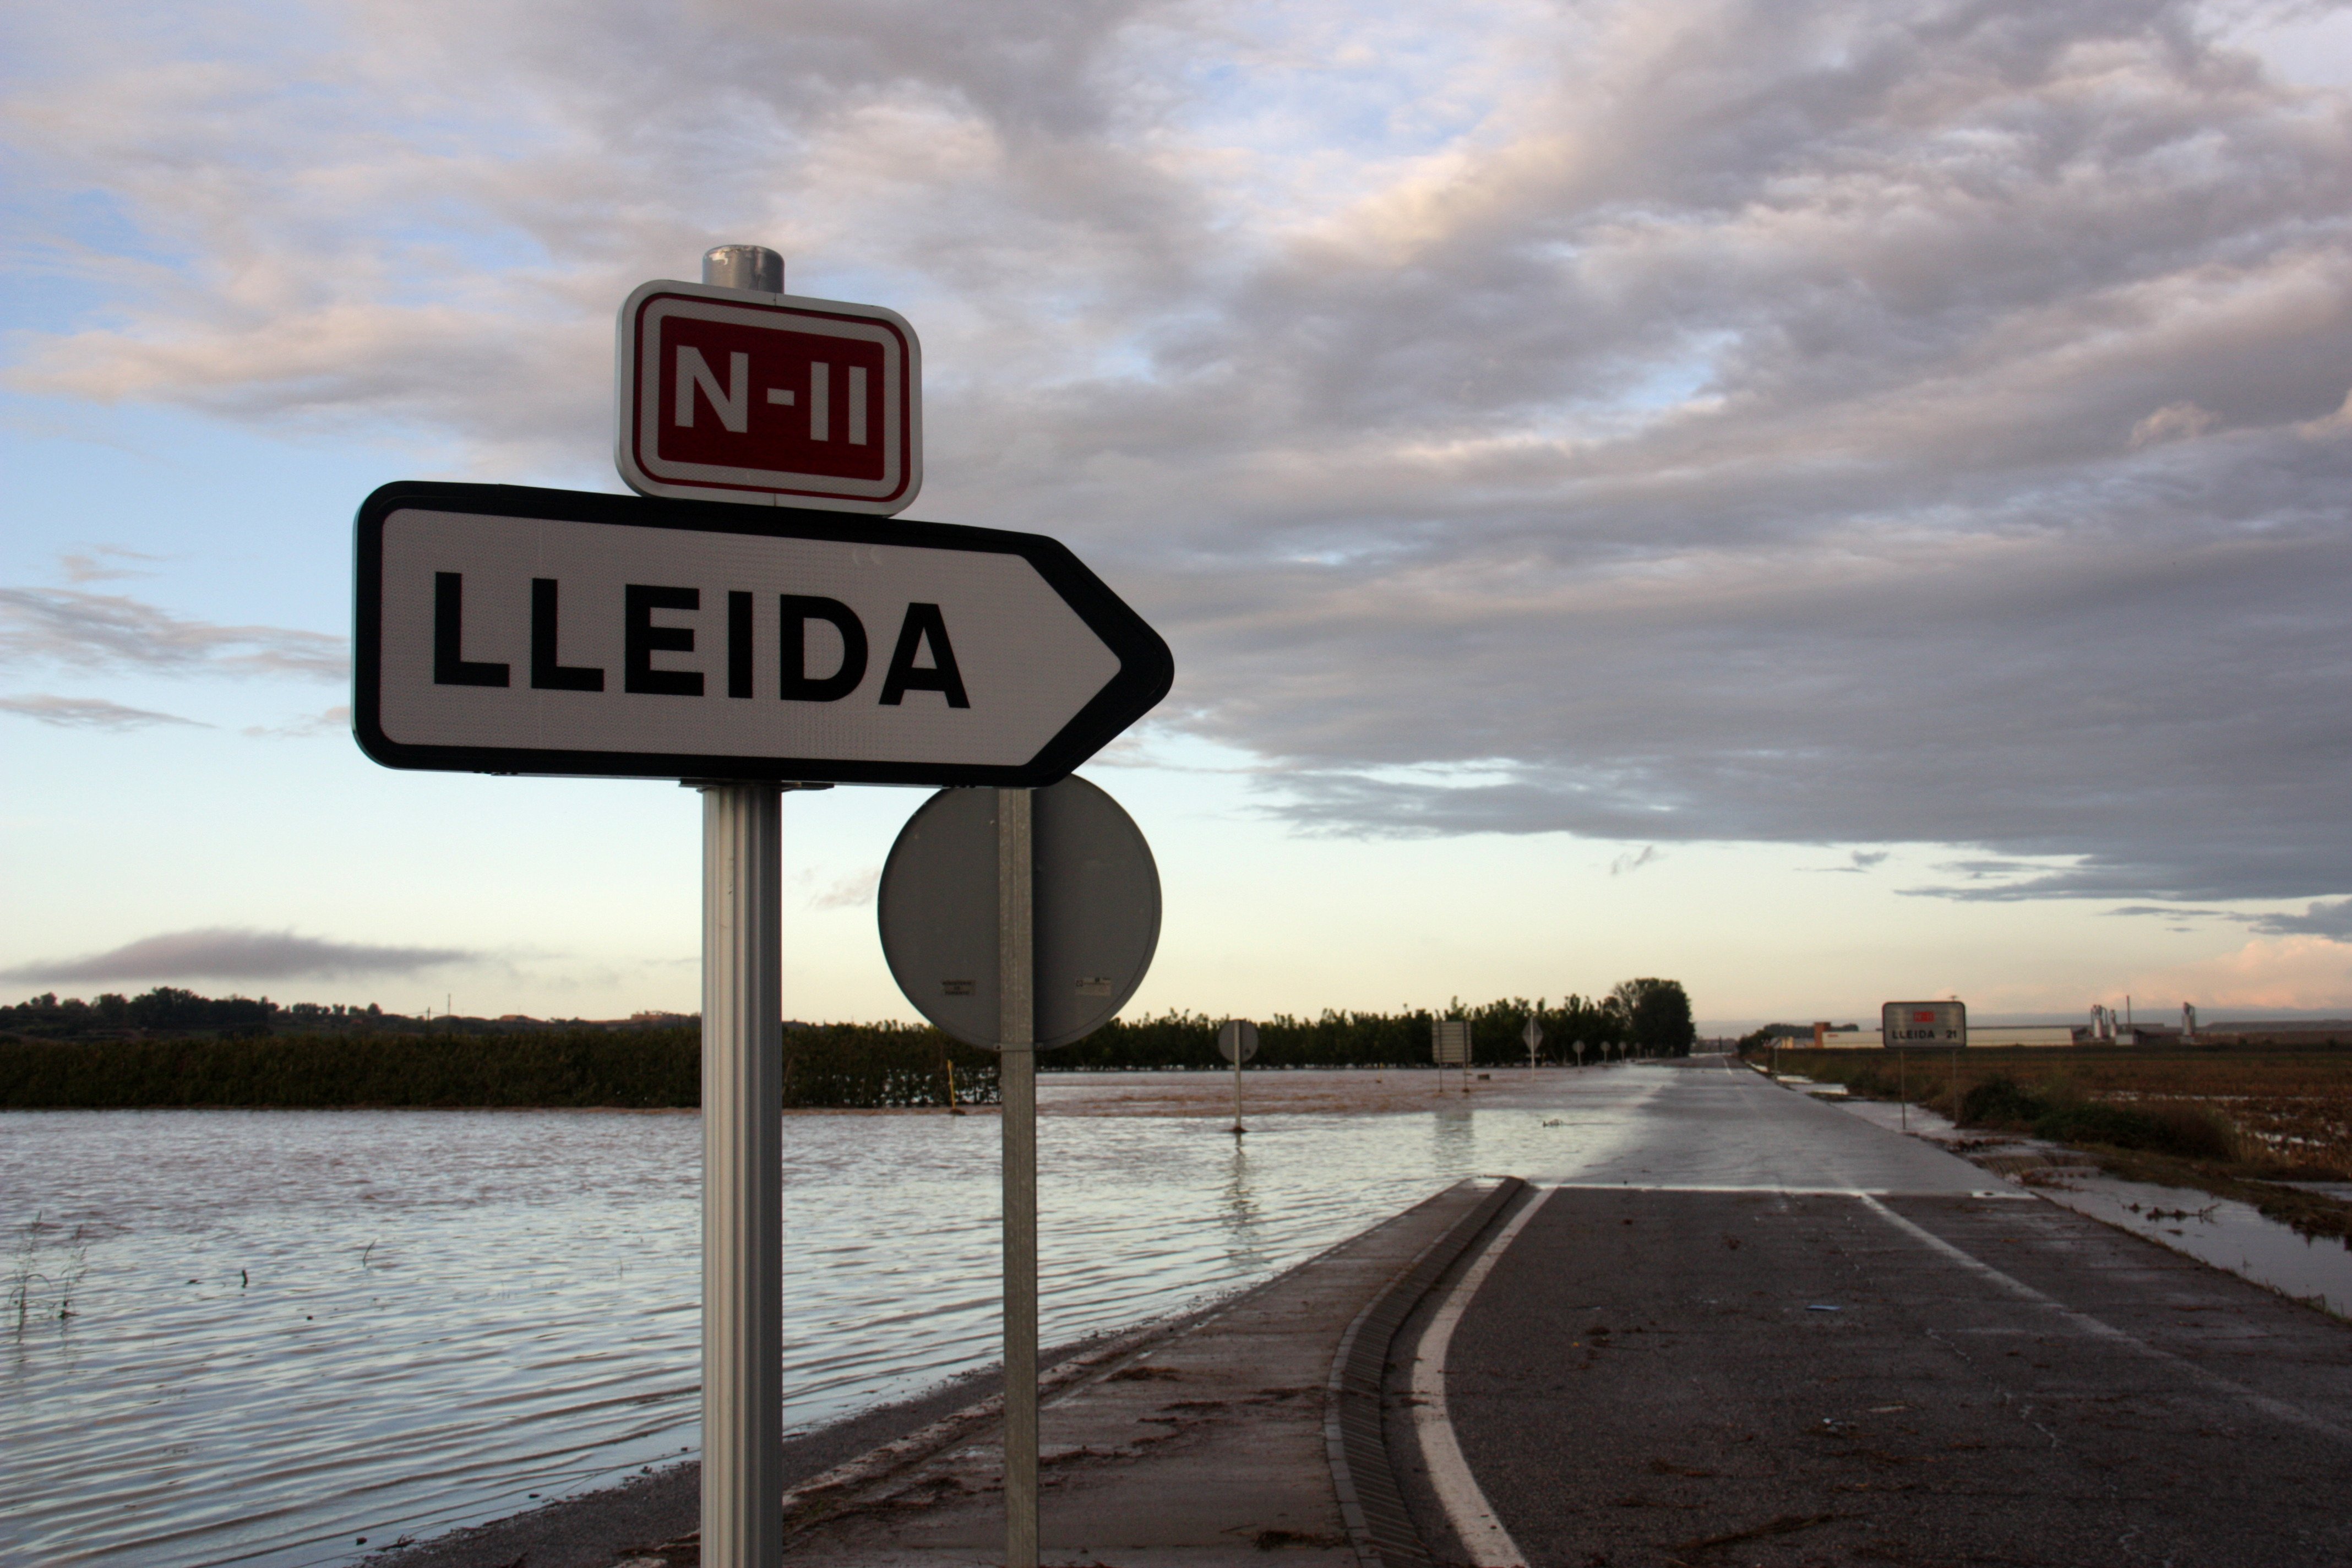 Lleida confinada: ¿cómo se podrá entrar y salir (excepcionalmente) a partir de ahora?